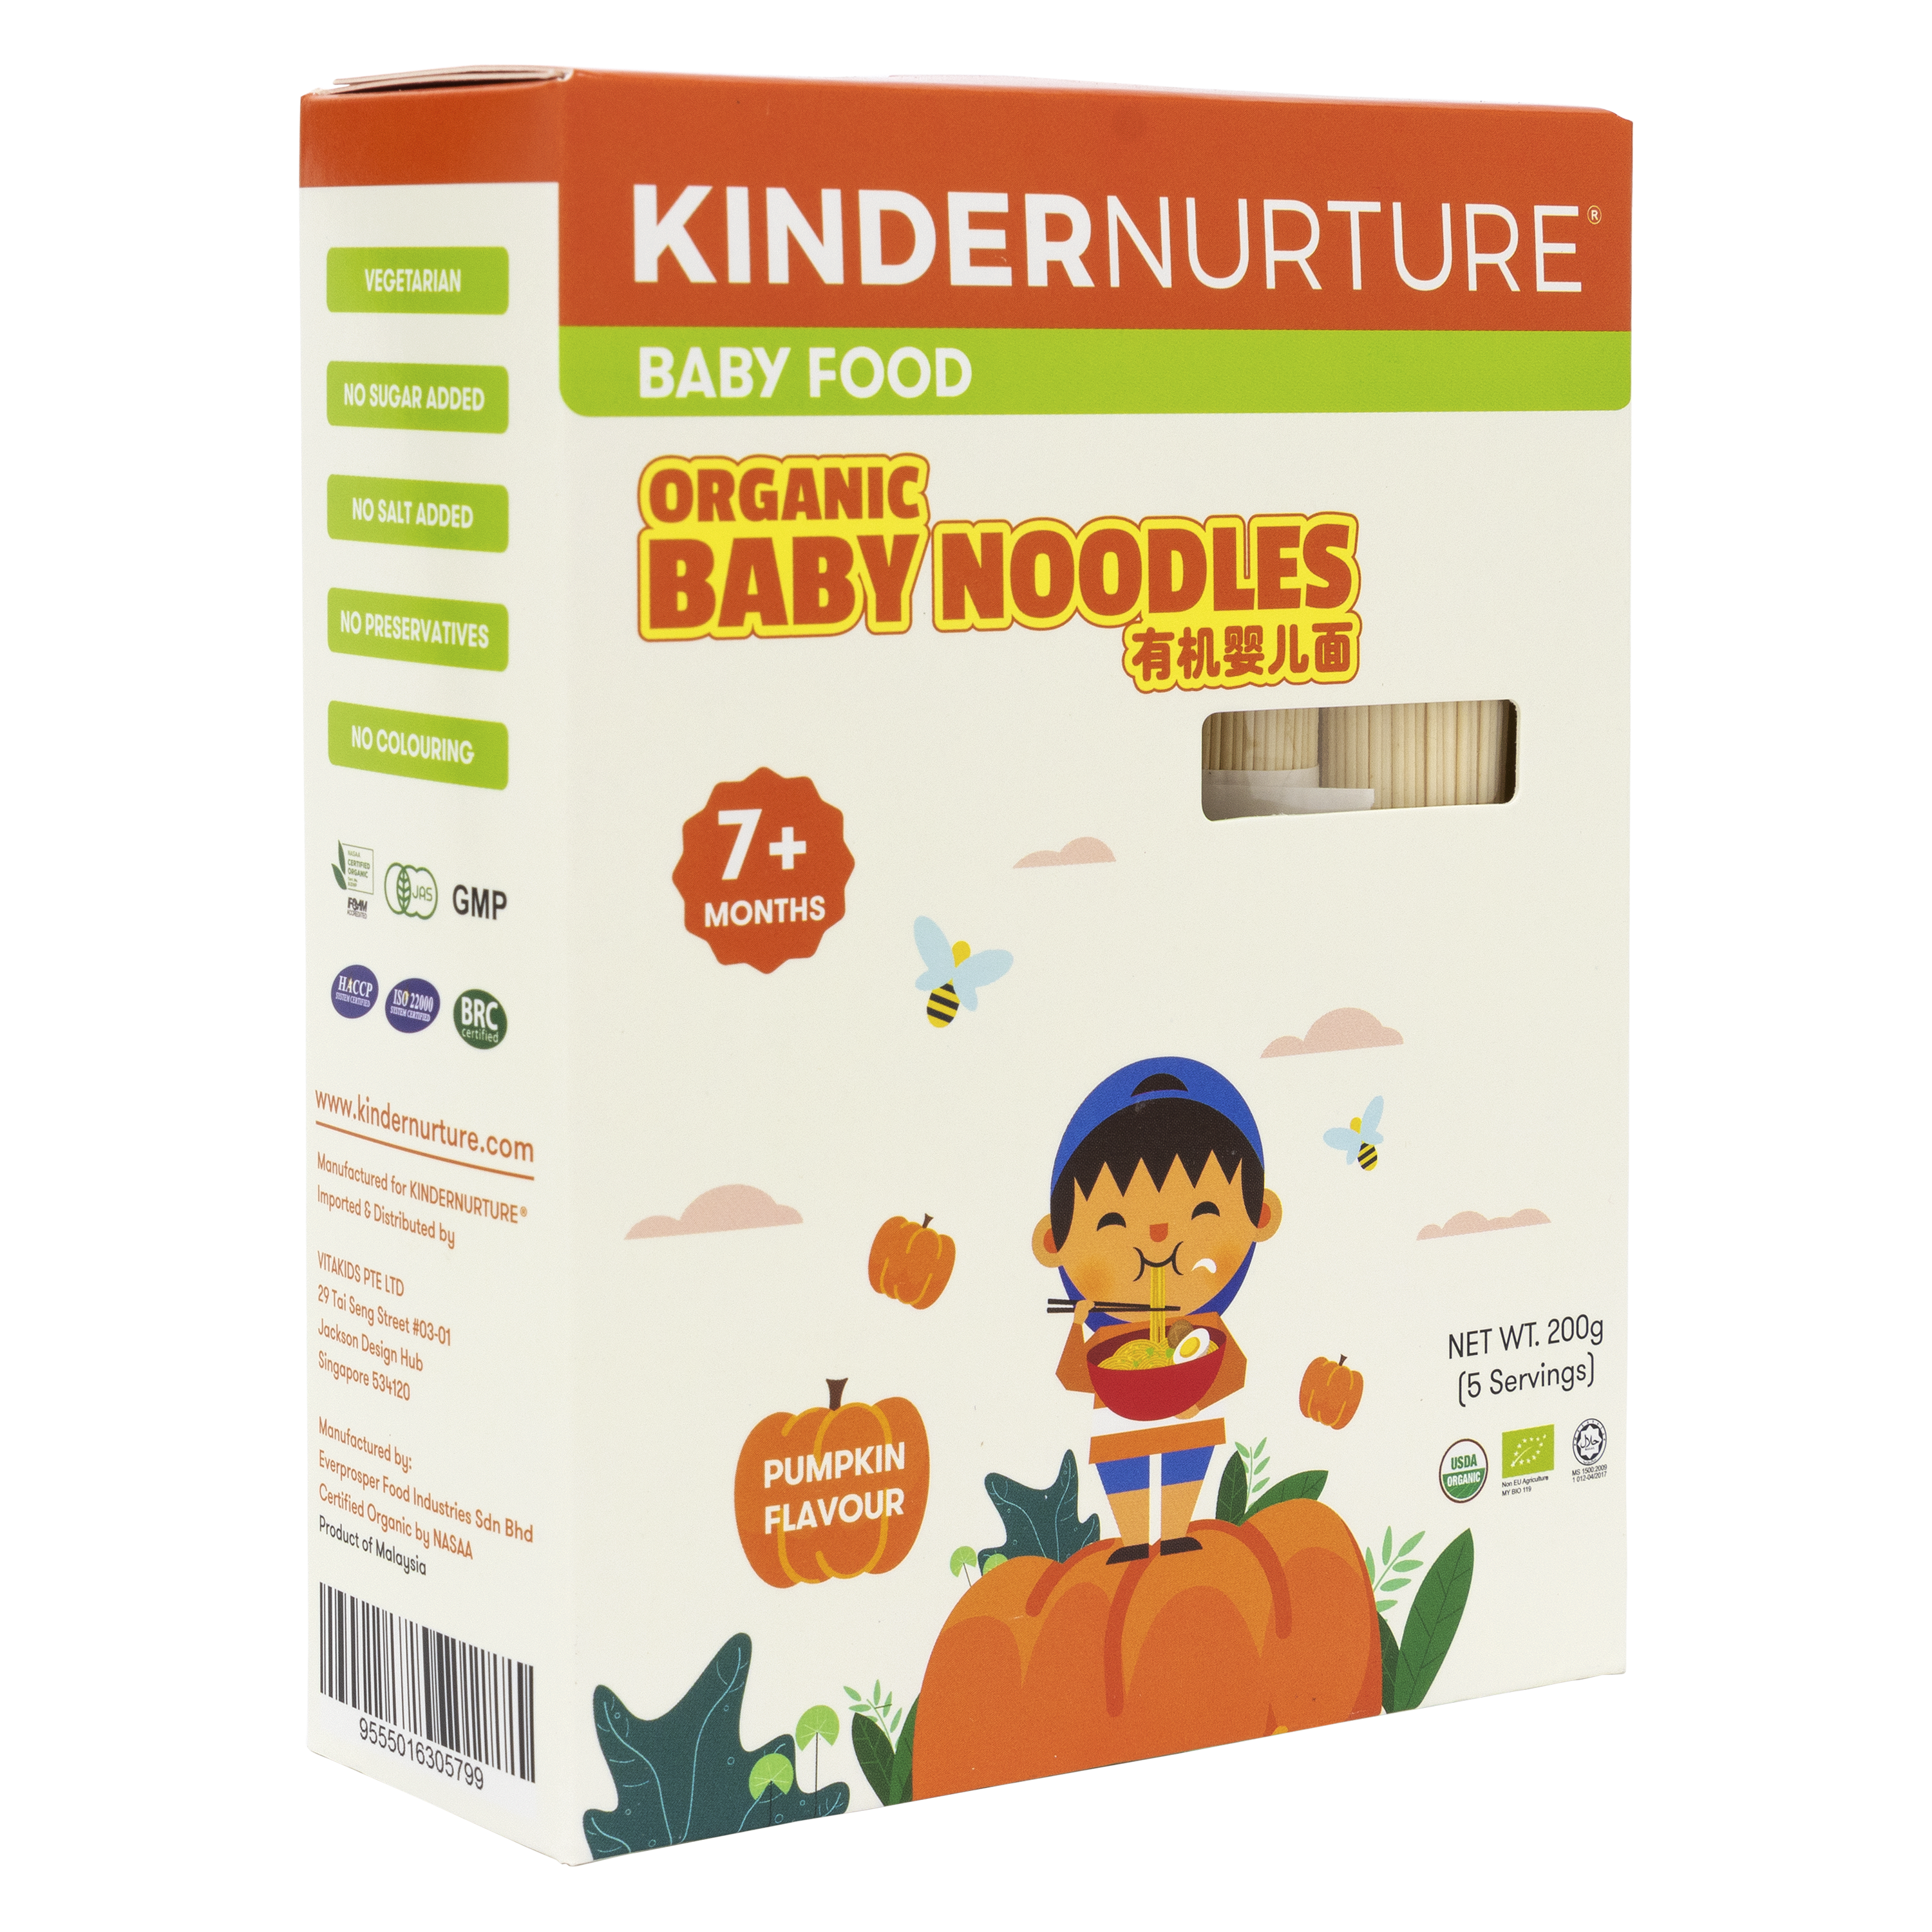 KinderNurture Organic Baby Noodles- Pumpkin Flavour, 200g.